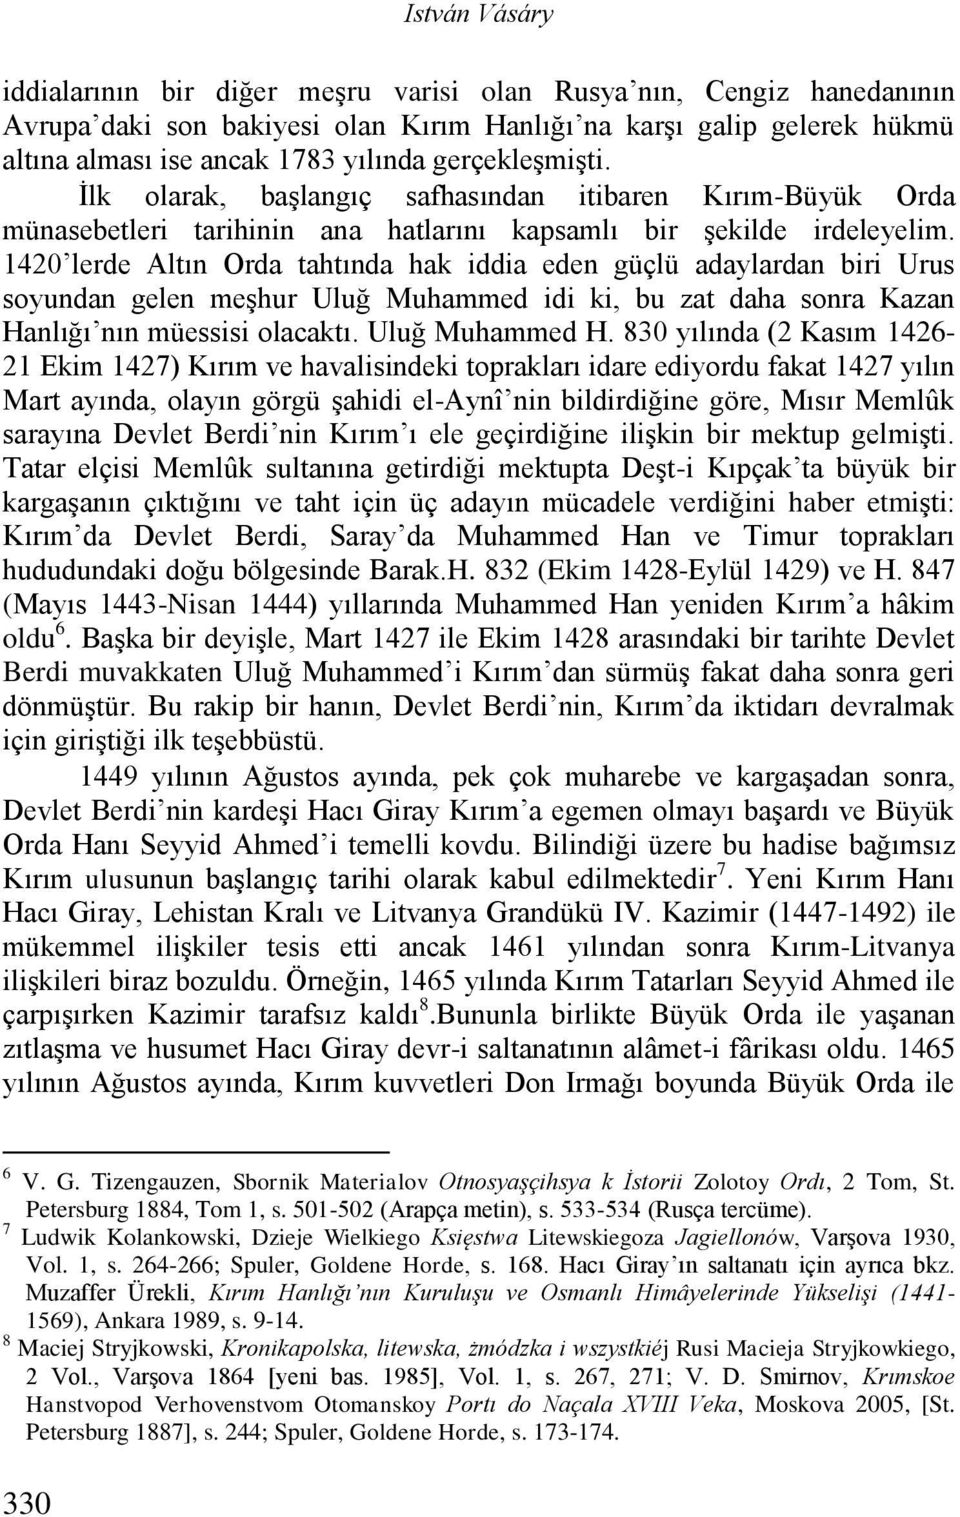 1420 lerde Altın Orda tahtında hak iddia eden güçlü adaylardan biri Urus soyundan gelen meşhur Uluğ Muhammed idi ki, bu zat daha sonra Kazan Hanlığı nın müessisi olacaktı. Uluğ Muhammed H.